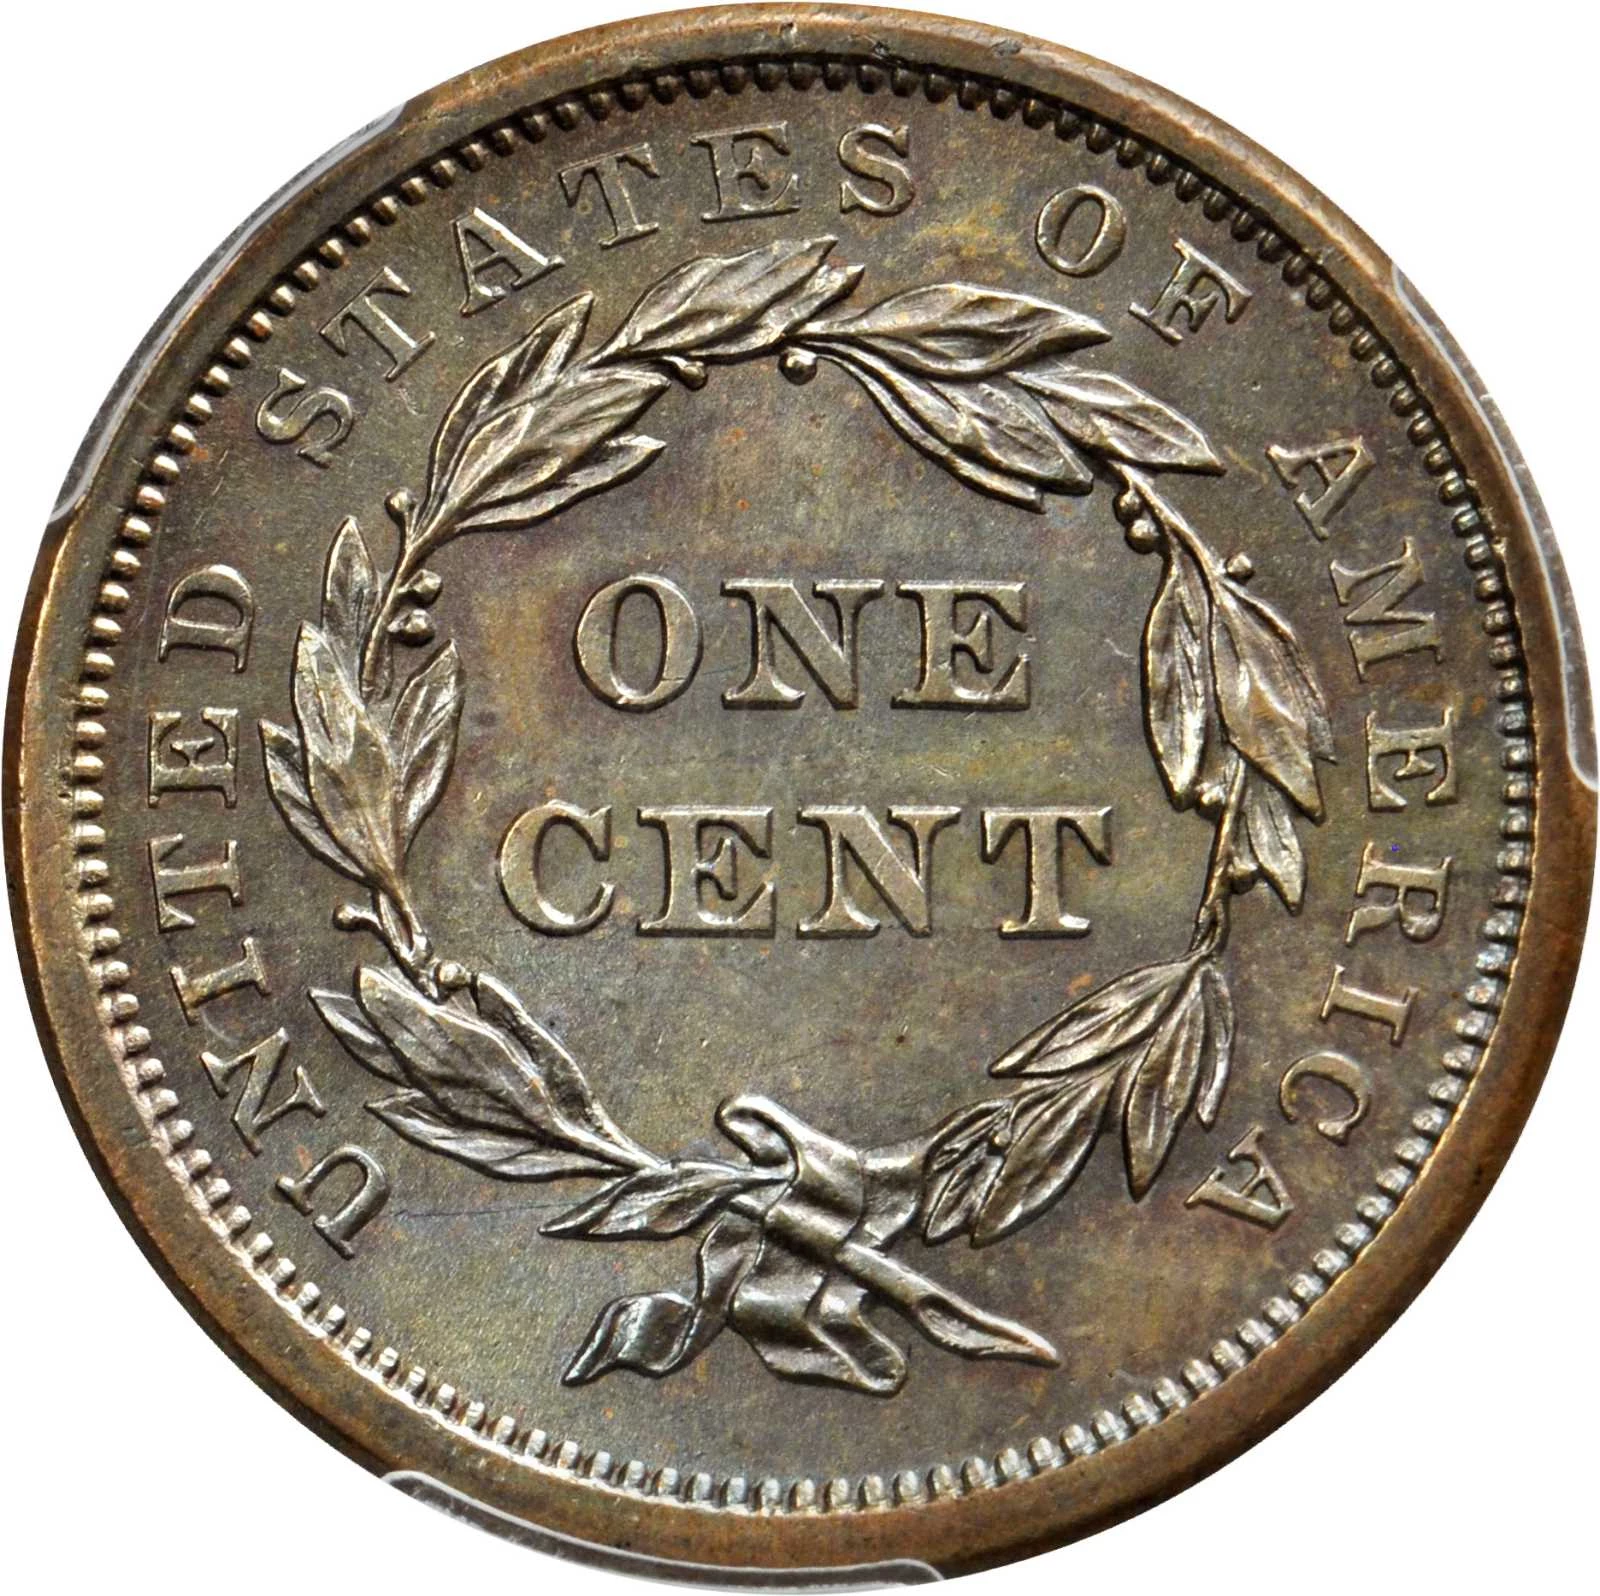 1856 Braided Hair Cent. N-7. Upright 5--Obverse Die Cap, Reverse  Brockage--MS-63 BN (NGC).